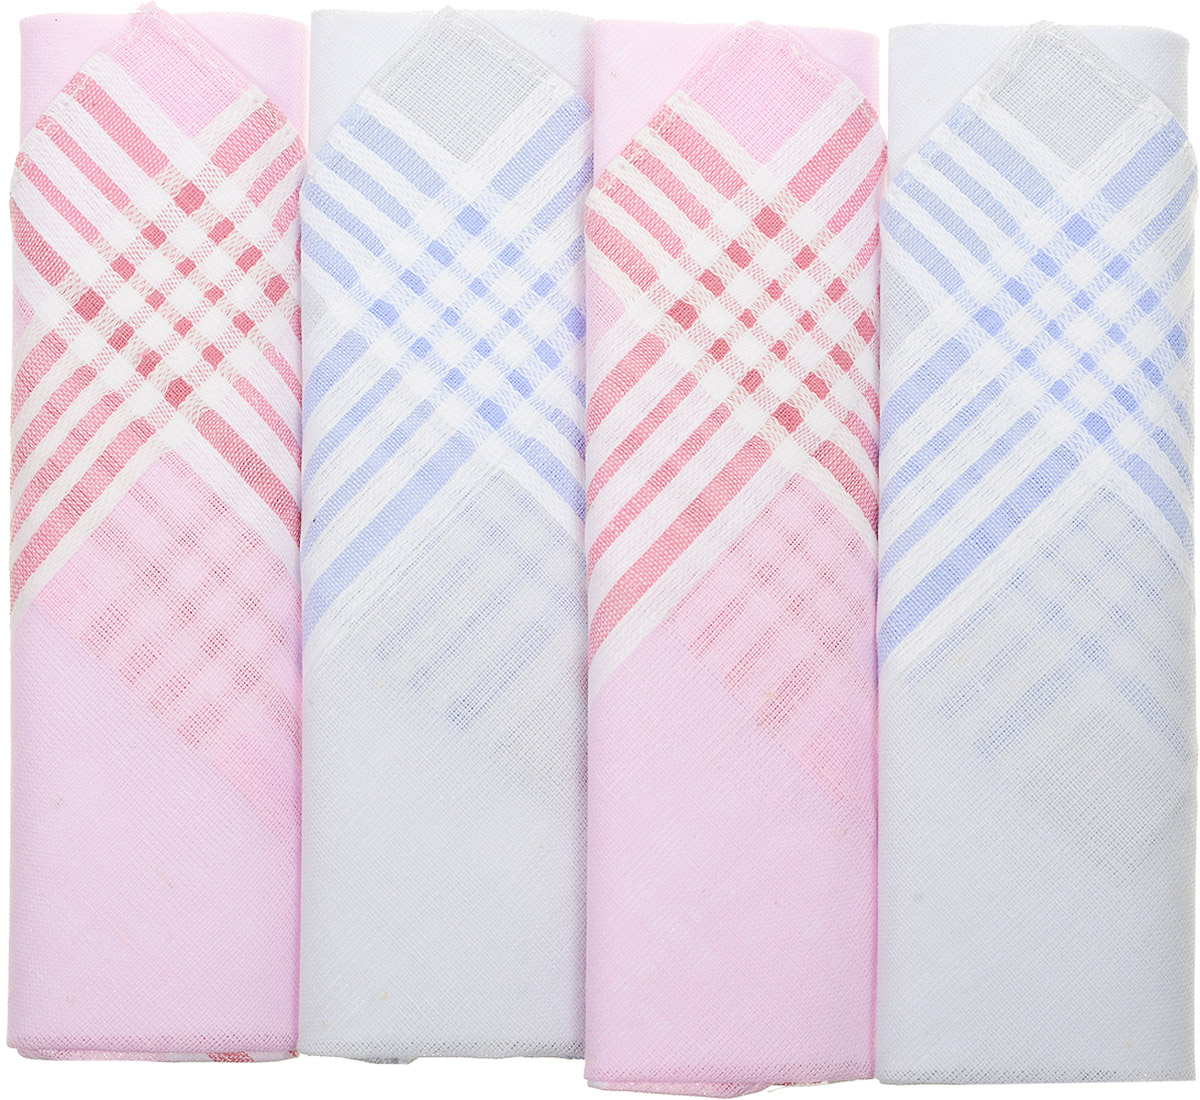 Платок носовой женский Zlata Korunka, цвет: белый, розовый, голубой, 4 шт. 71420-23. Размер 28 см х 28 см